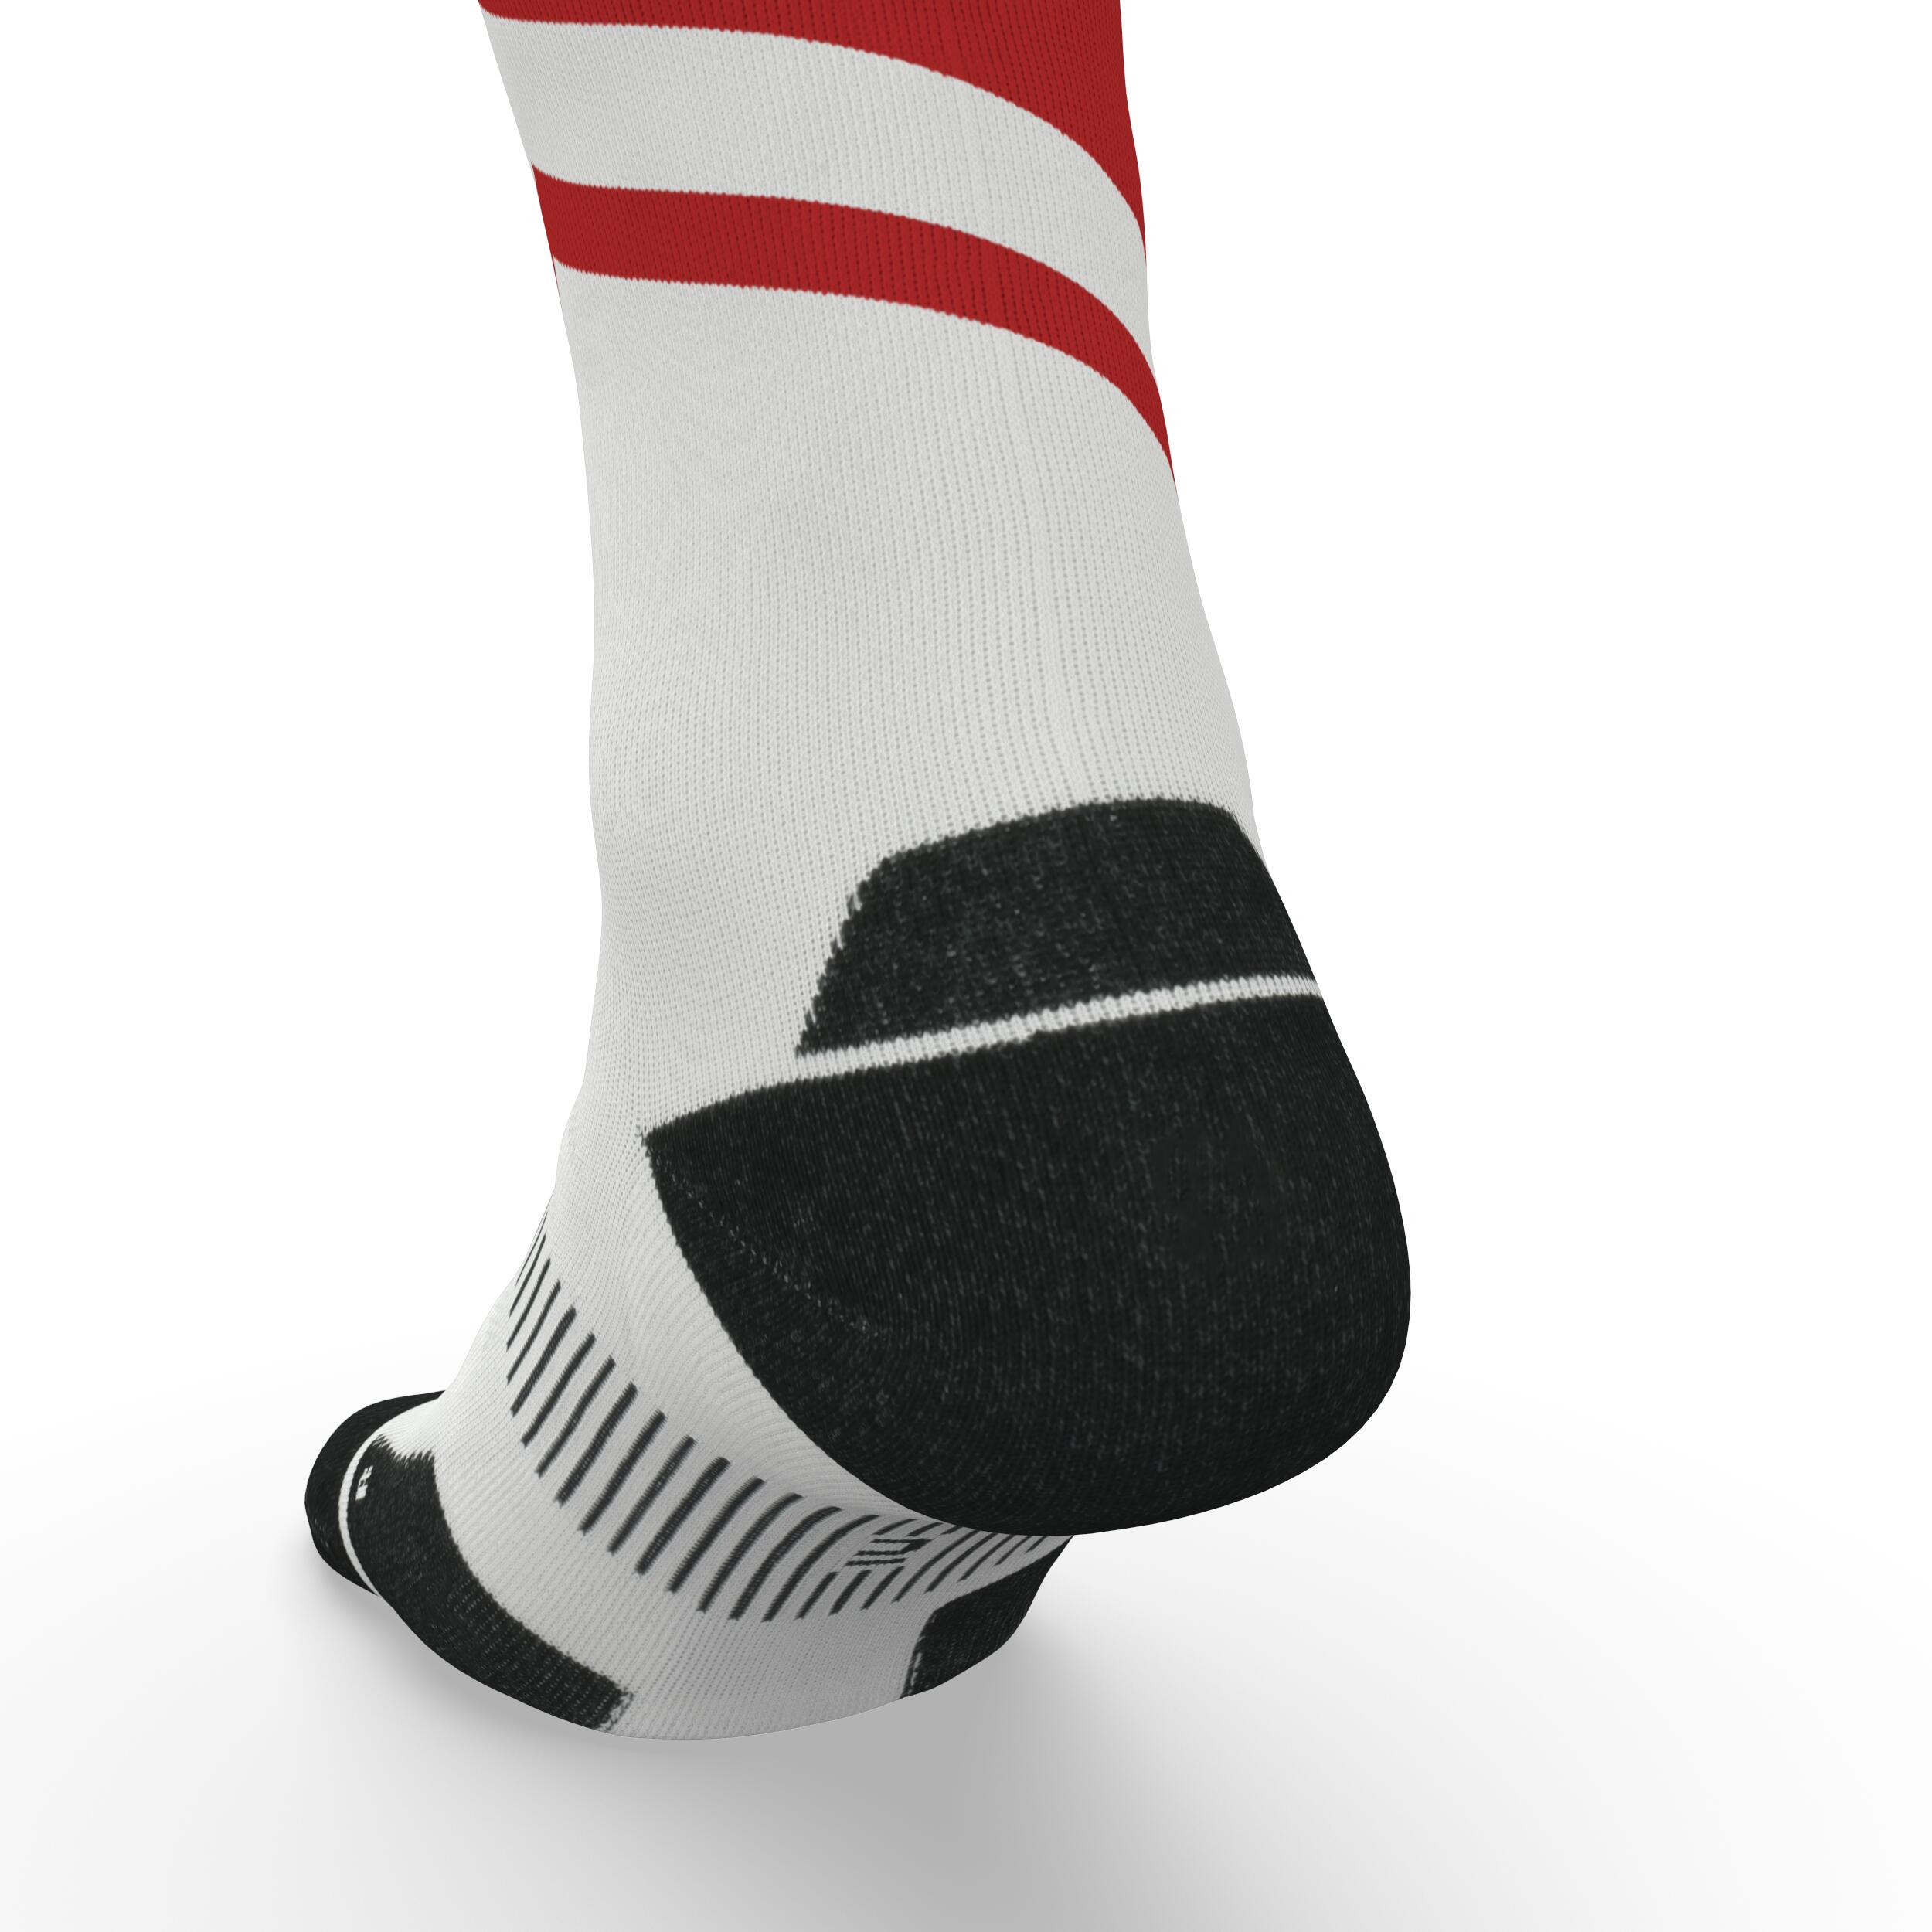 Run900 Mid-Calf Thick Running Socks - White/Red 7/7